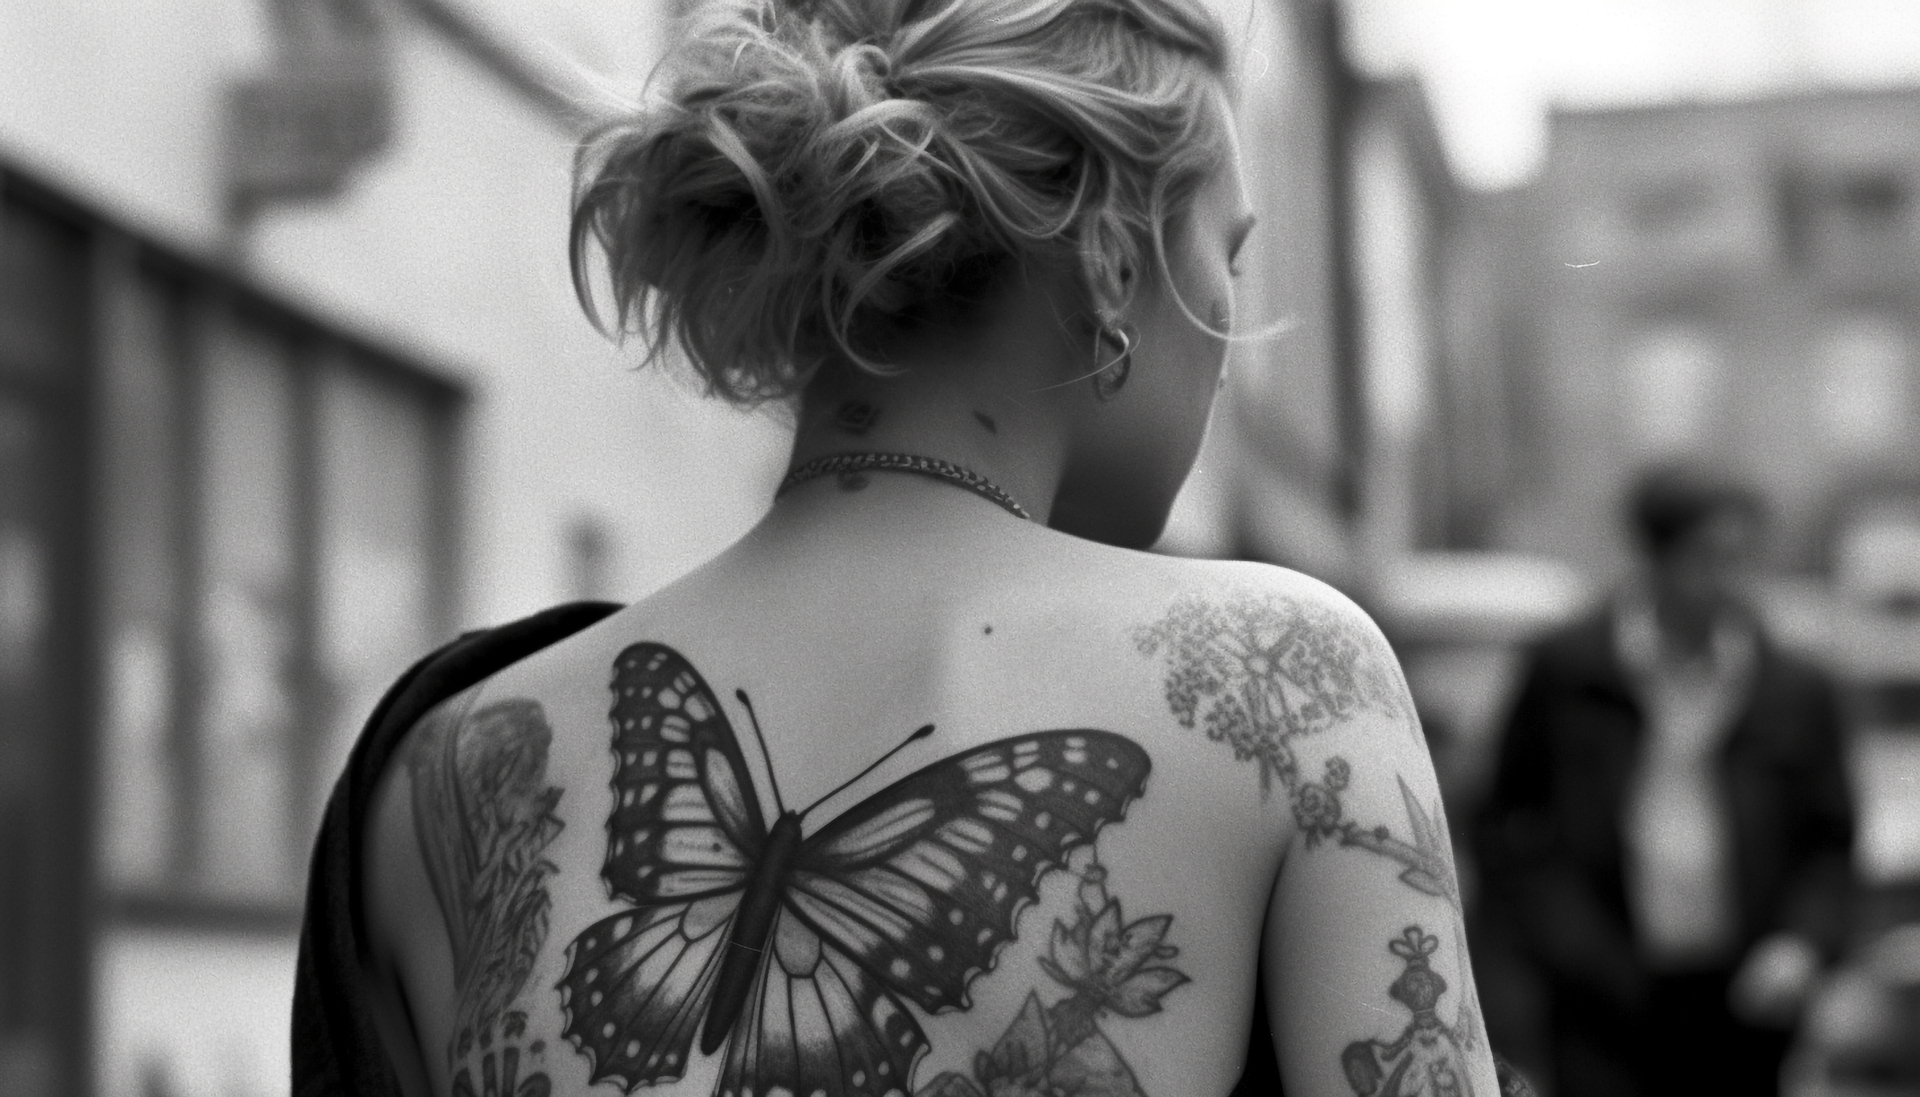 Na obrazku widoczny jest tatuaż z motylem umieszczonym na plecach kobiety. Motyl, symbol transformacji i delikatności, pięknie ozdabia jej skórę, dodając jej wyjątkowego uroku. Ten artystyczny motyw na plecach kobiety jest nie tylko estetyczny, ale również wyraża jej osobiste znaczenie i indywidualność